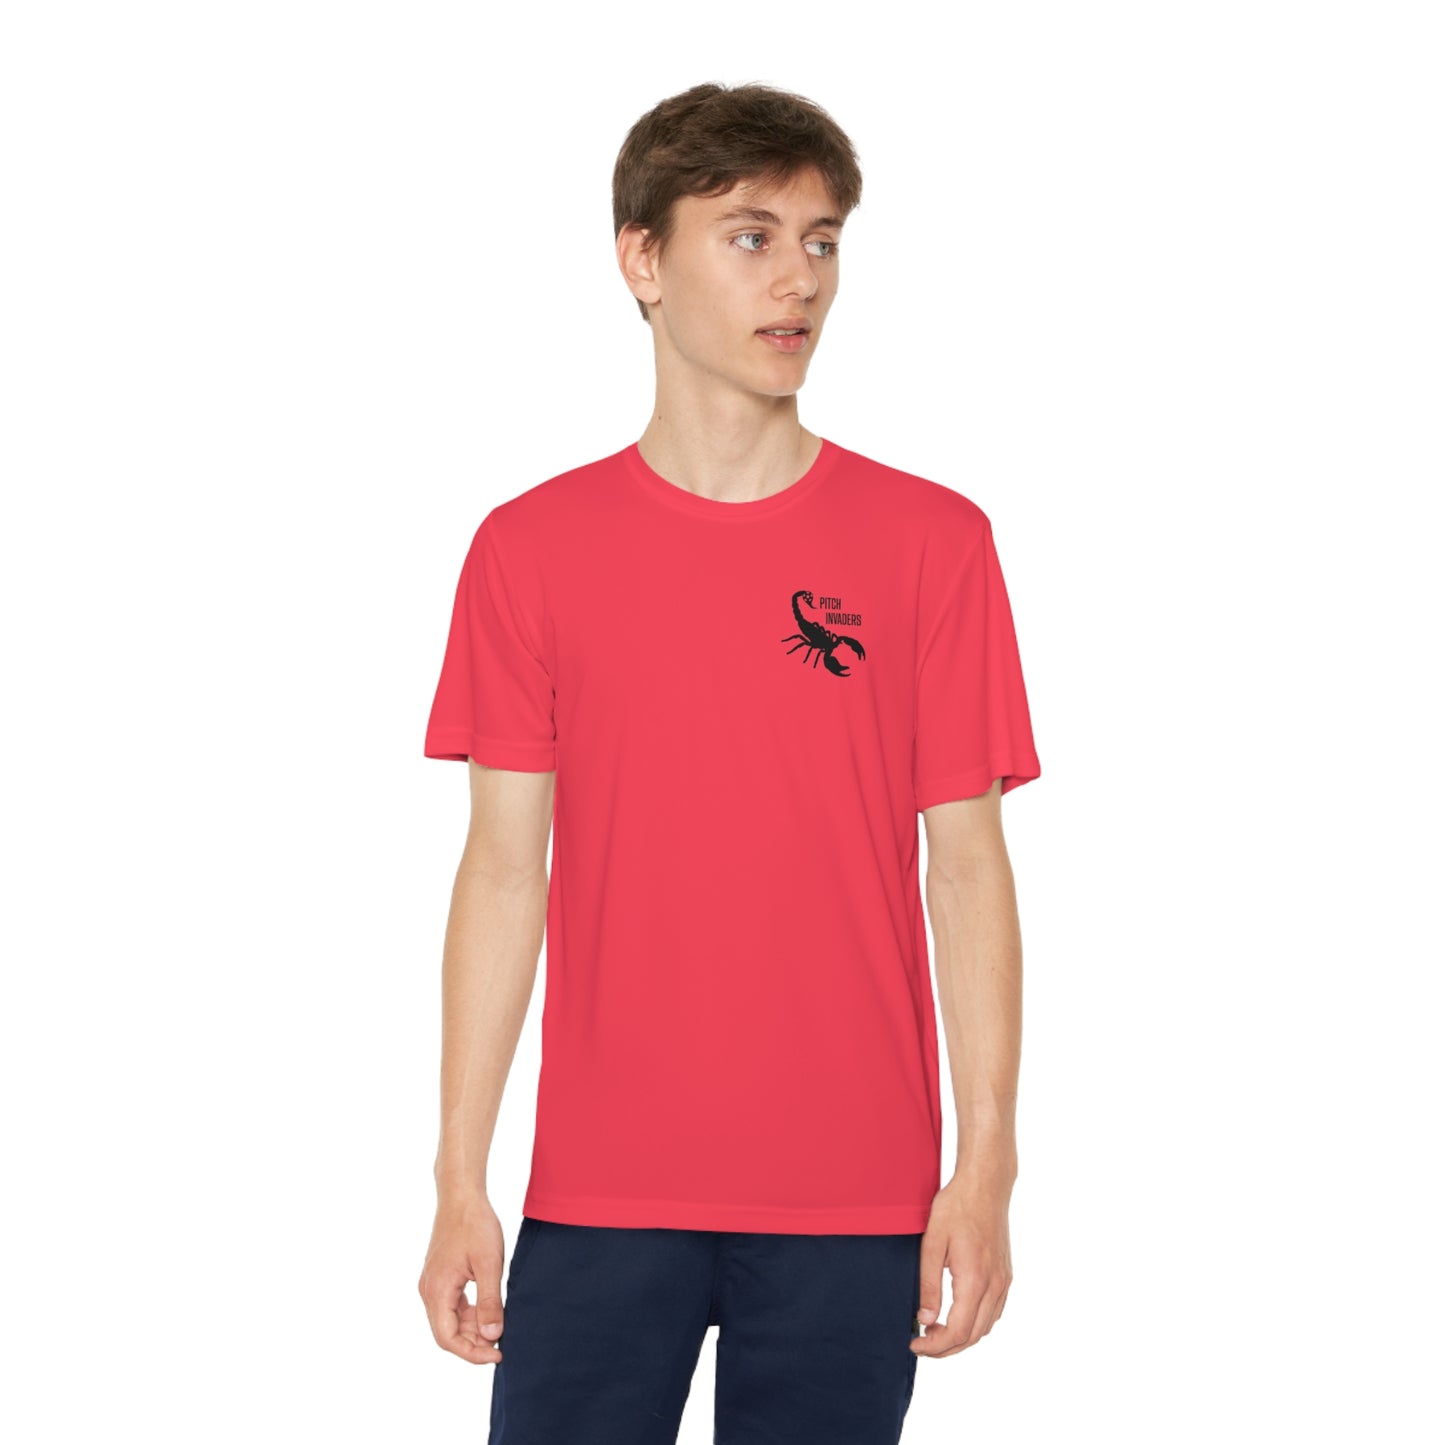 YOU GOT NUTMEGGED Youth Athletic T-Shirt (Unisex)